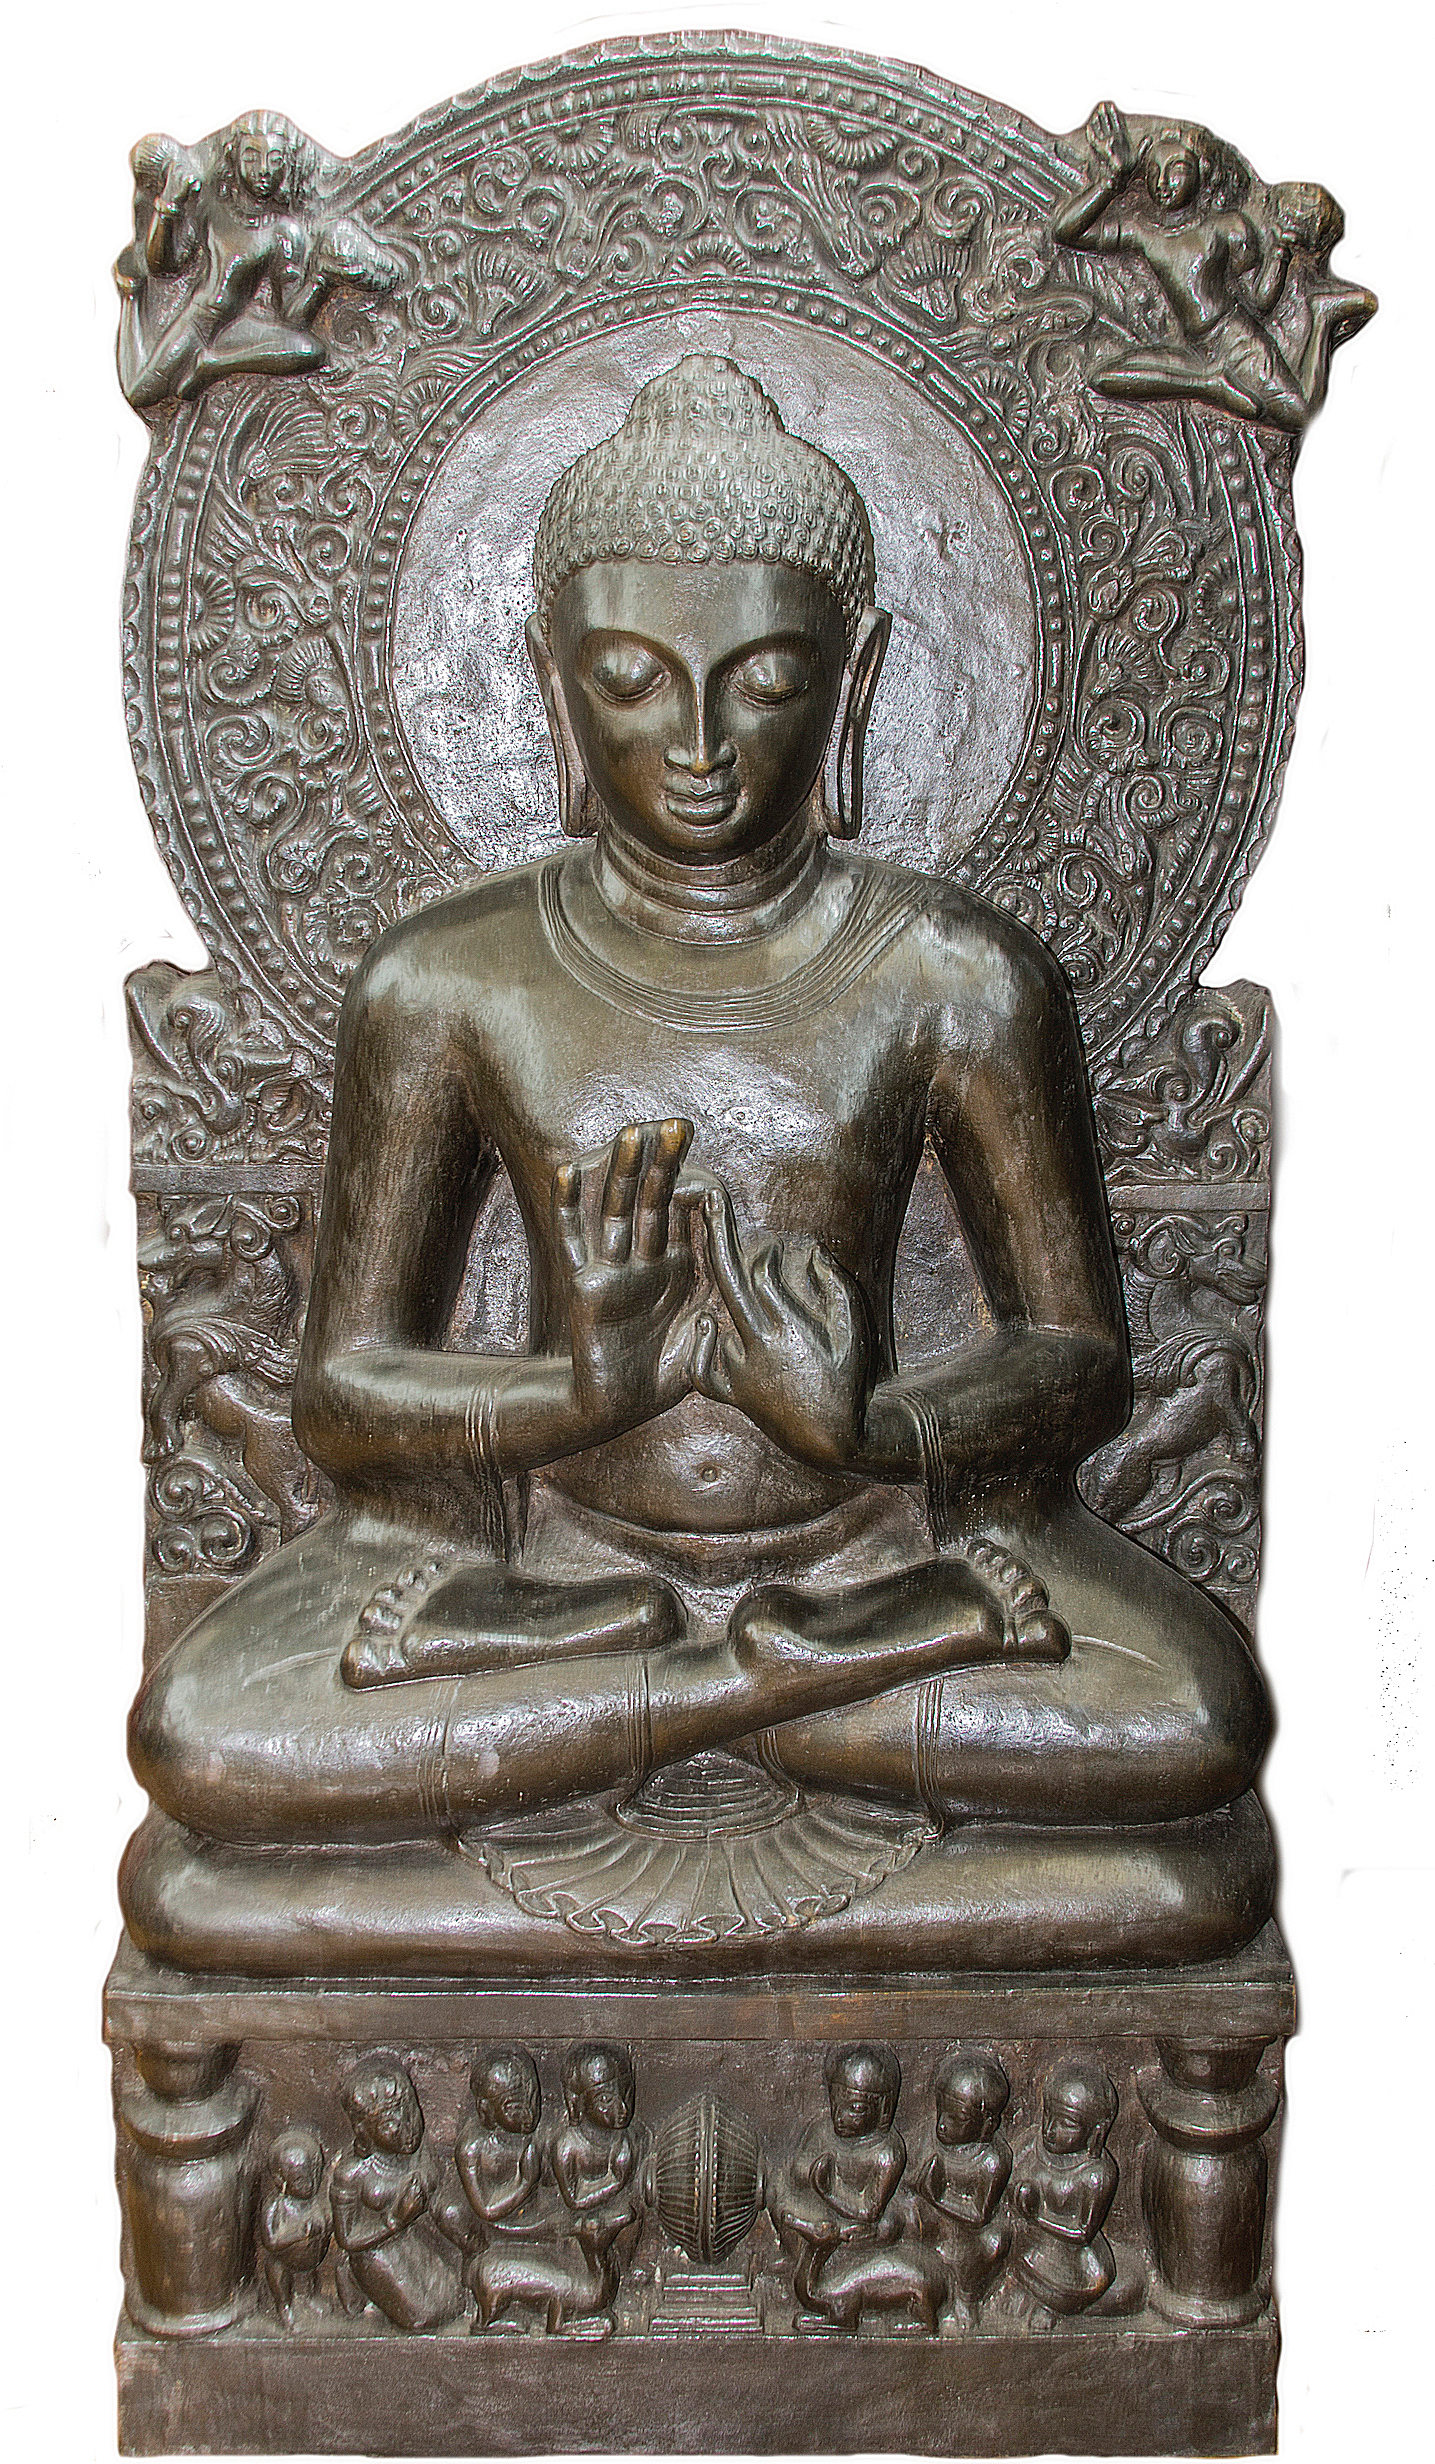 Escultura en bronce de Buda sentado en posición de loto con los ojos entrecerrados en meditación, posee un halo circular detrás de su cabeza con dos figuras volando. Abajo, un basamento rectangular con siete figuras humanas y dos animales.